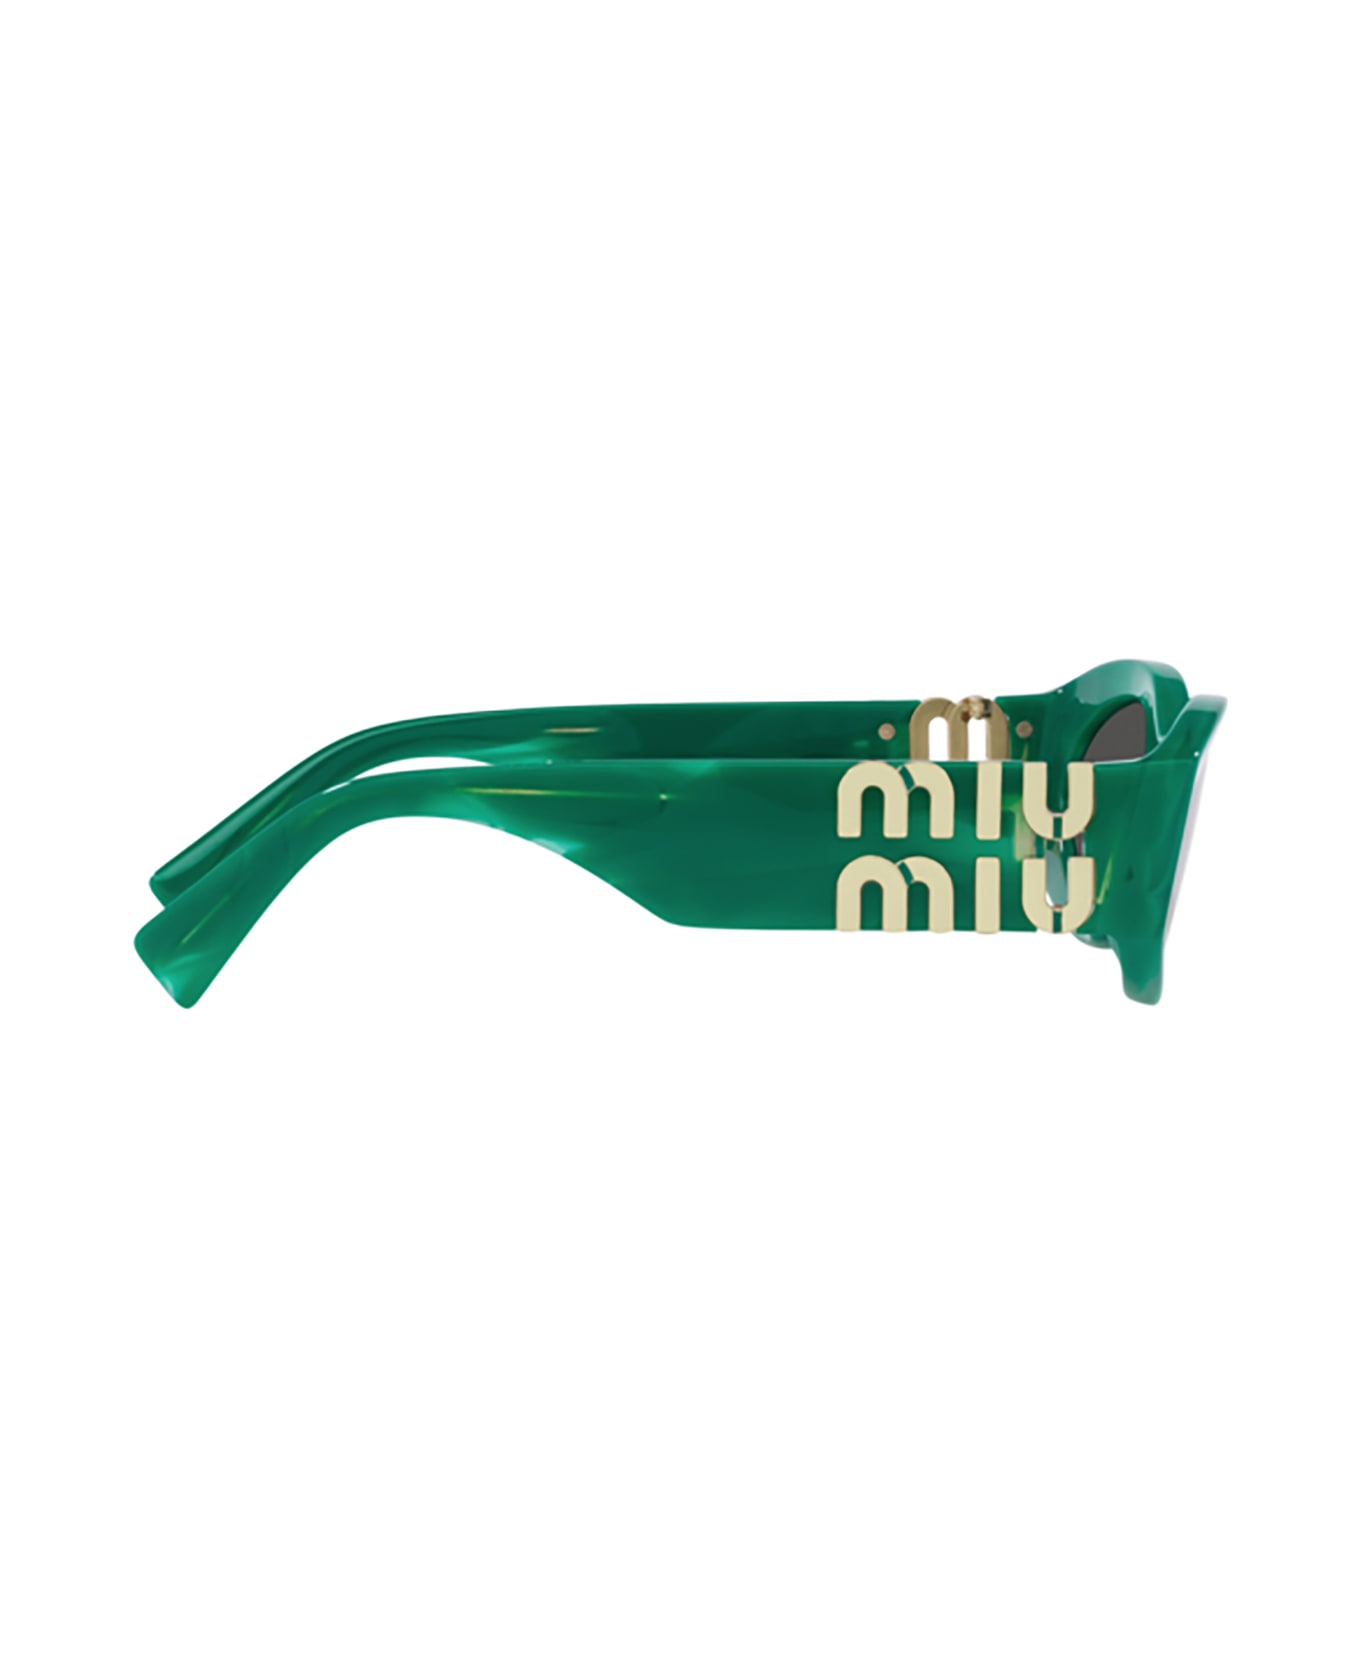 Miu Miu Eyewear Mu 11ws Green Sunglasses - Green サングラス